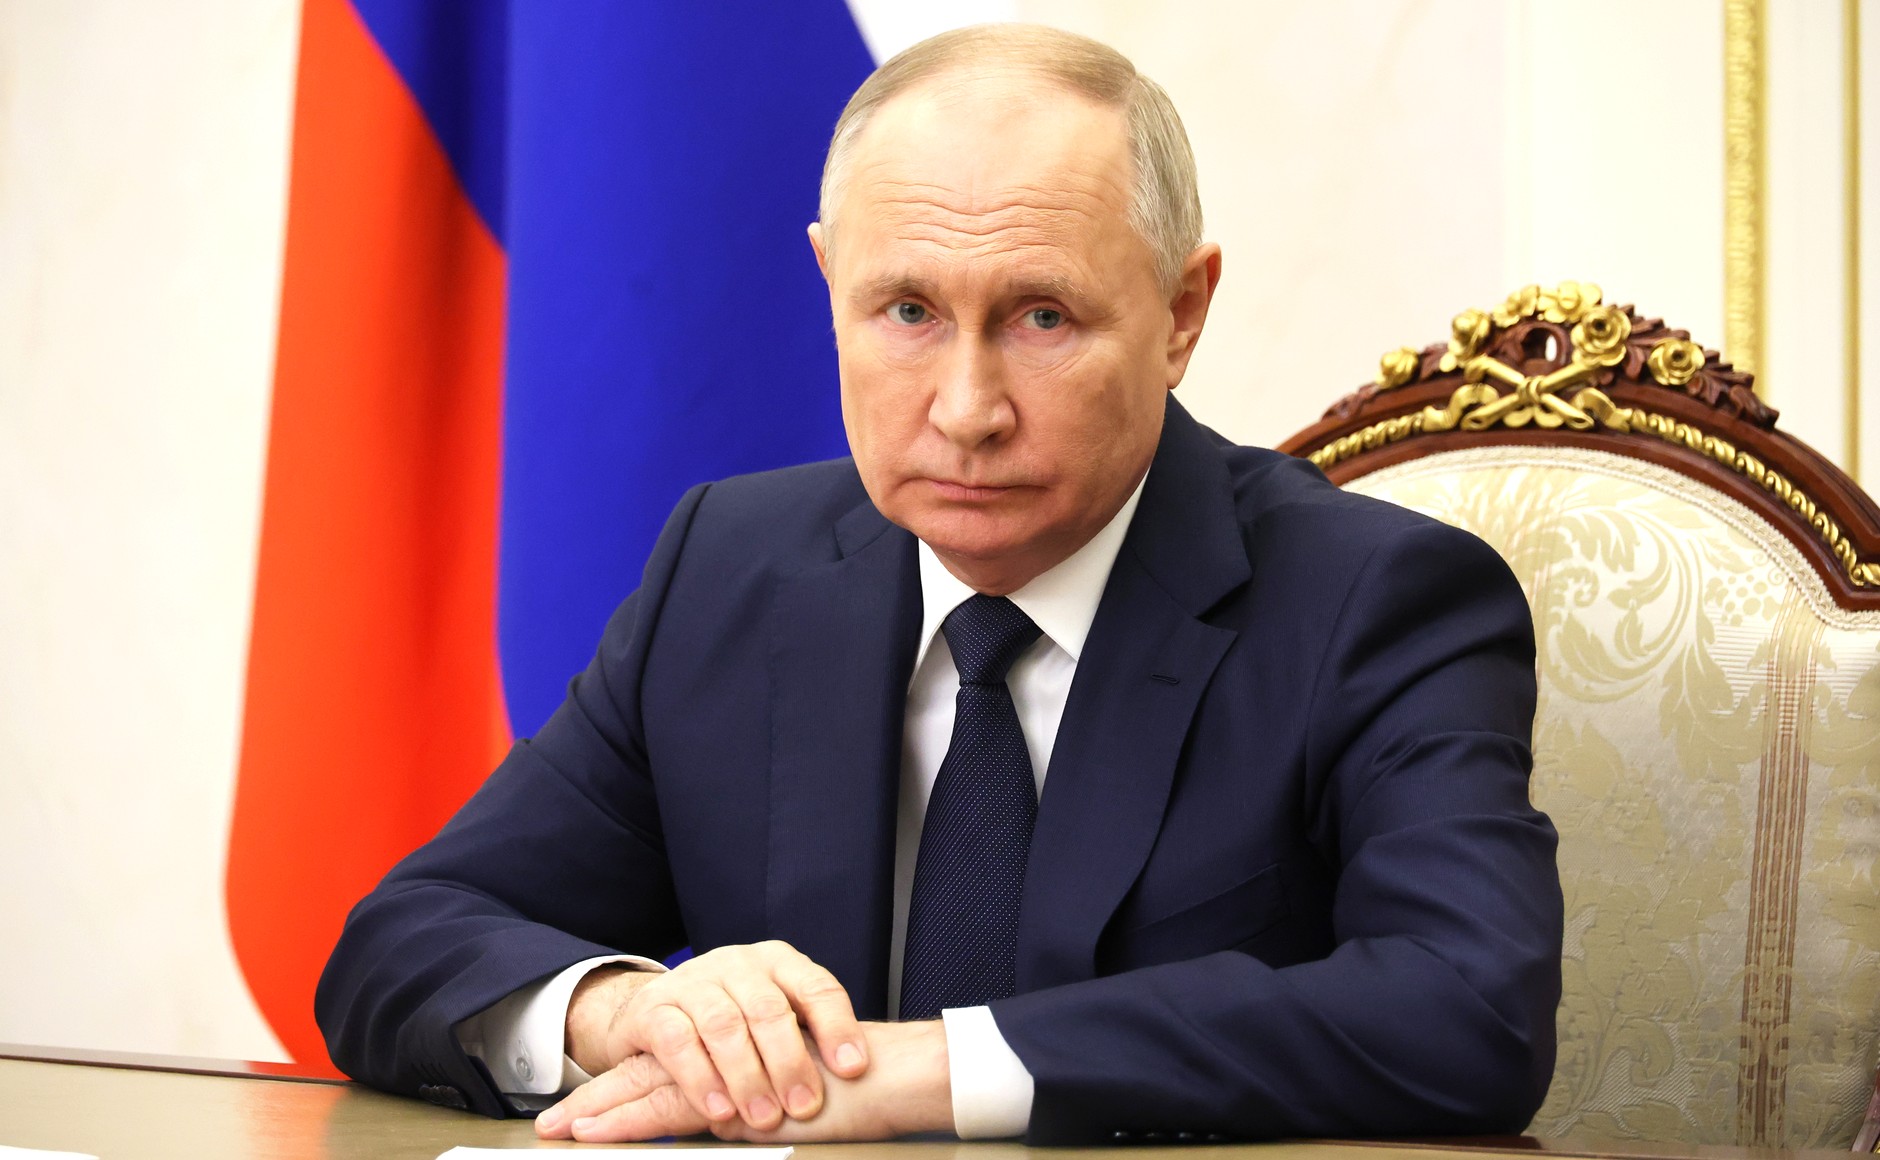 Путин: перед медициной встают новые планы, неизменно одно – великая миссия врача